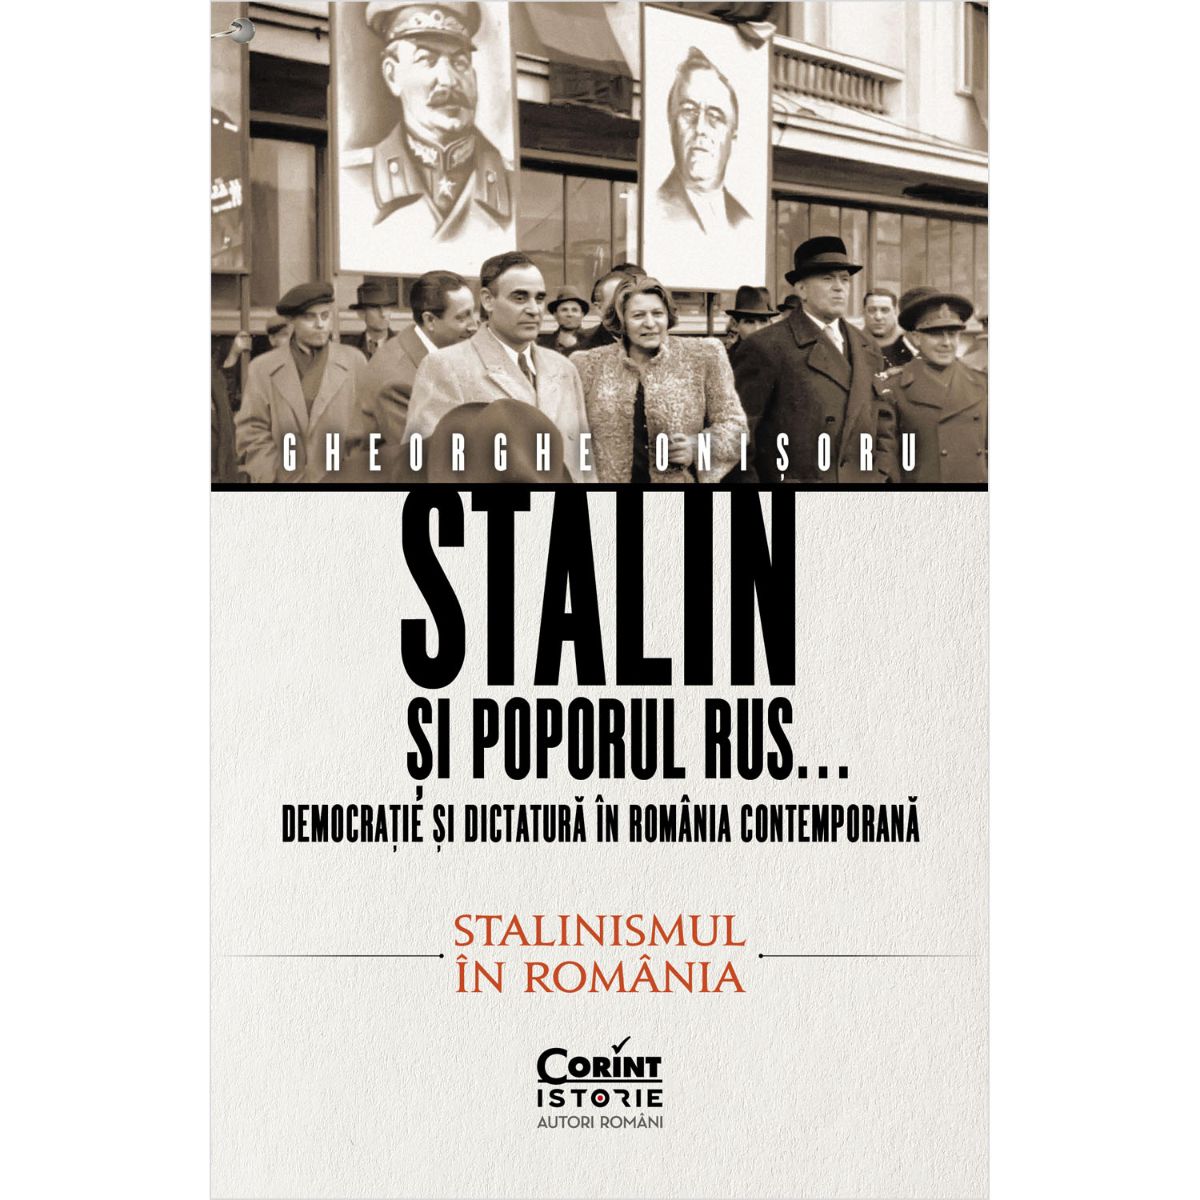 Stalin si poporul rus, Gheorghe Onisoru, Vol. 2